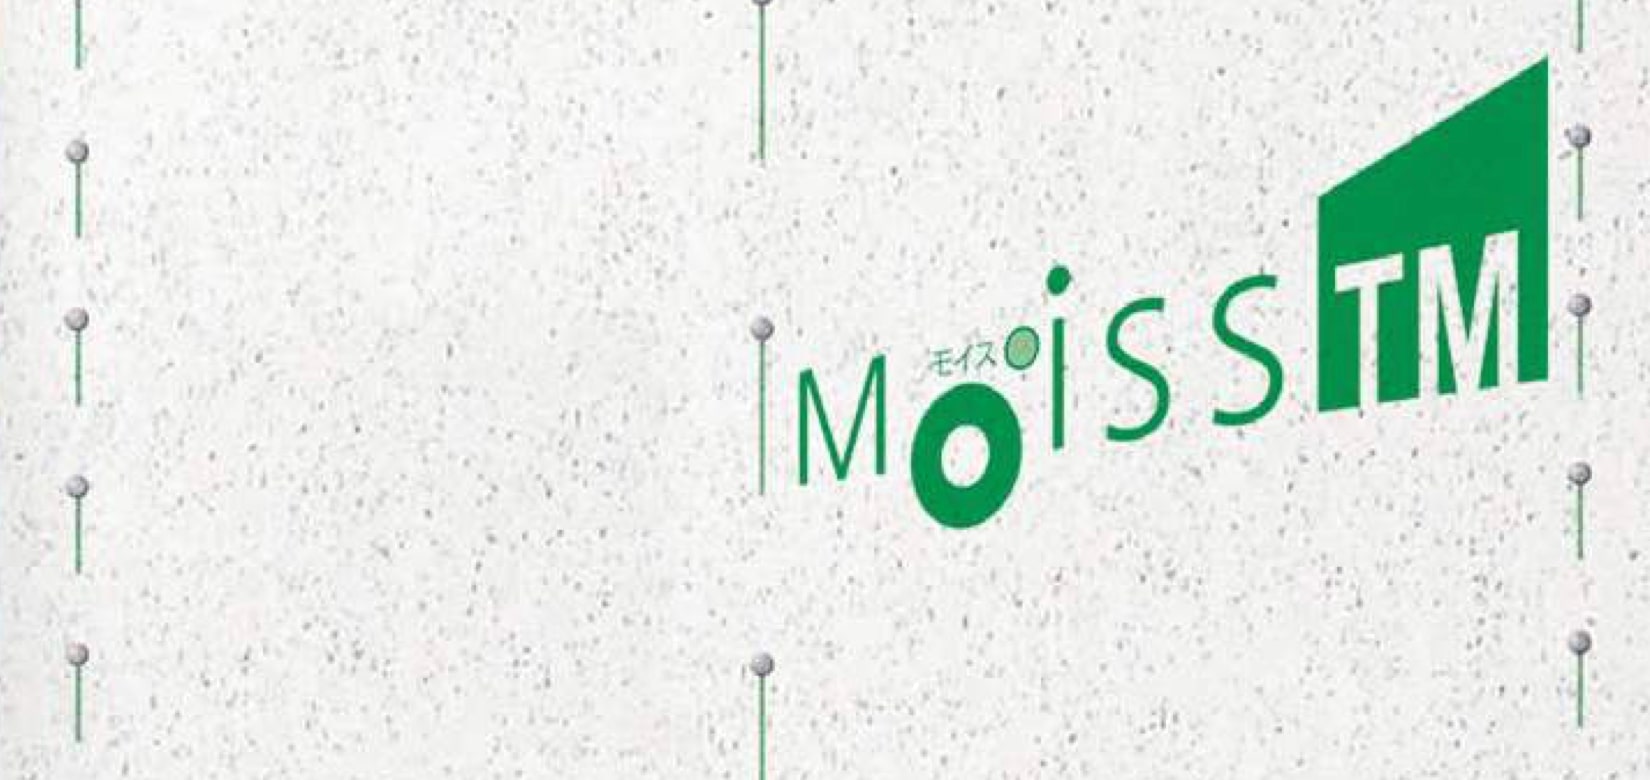 MOISS TM